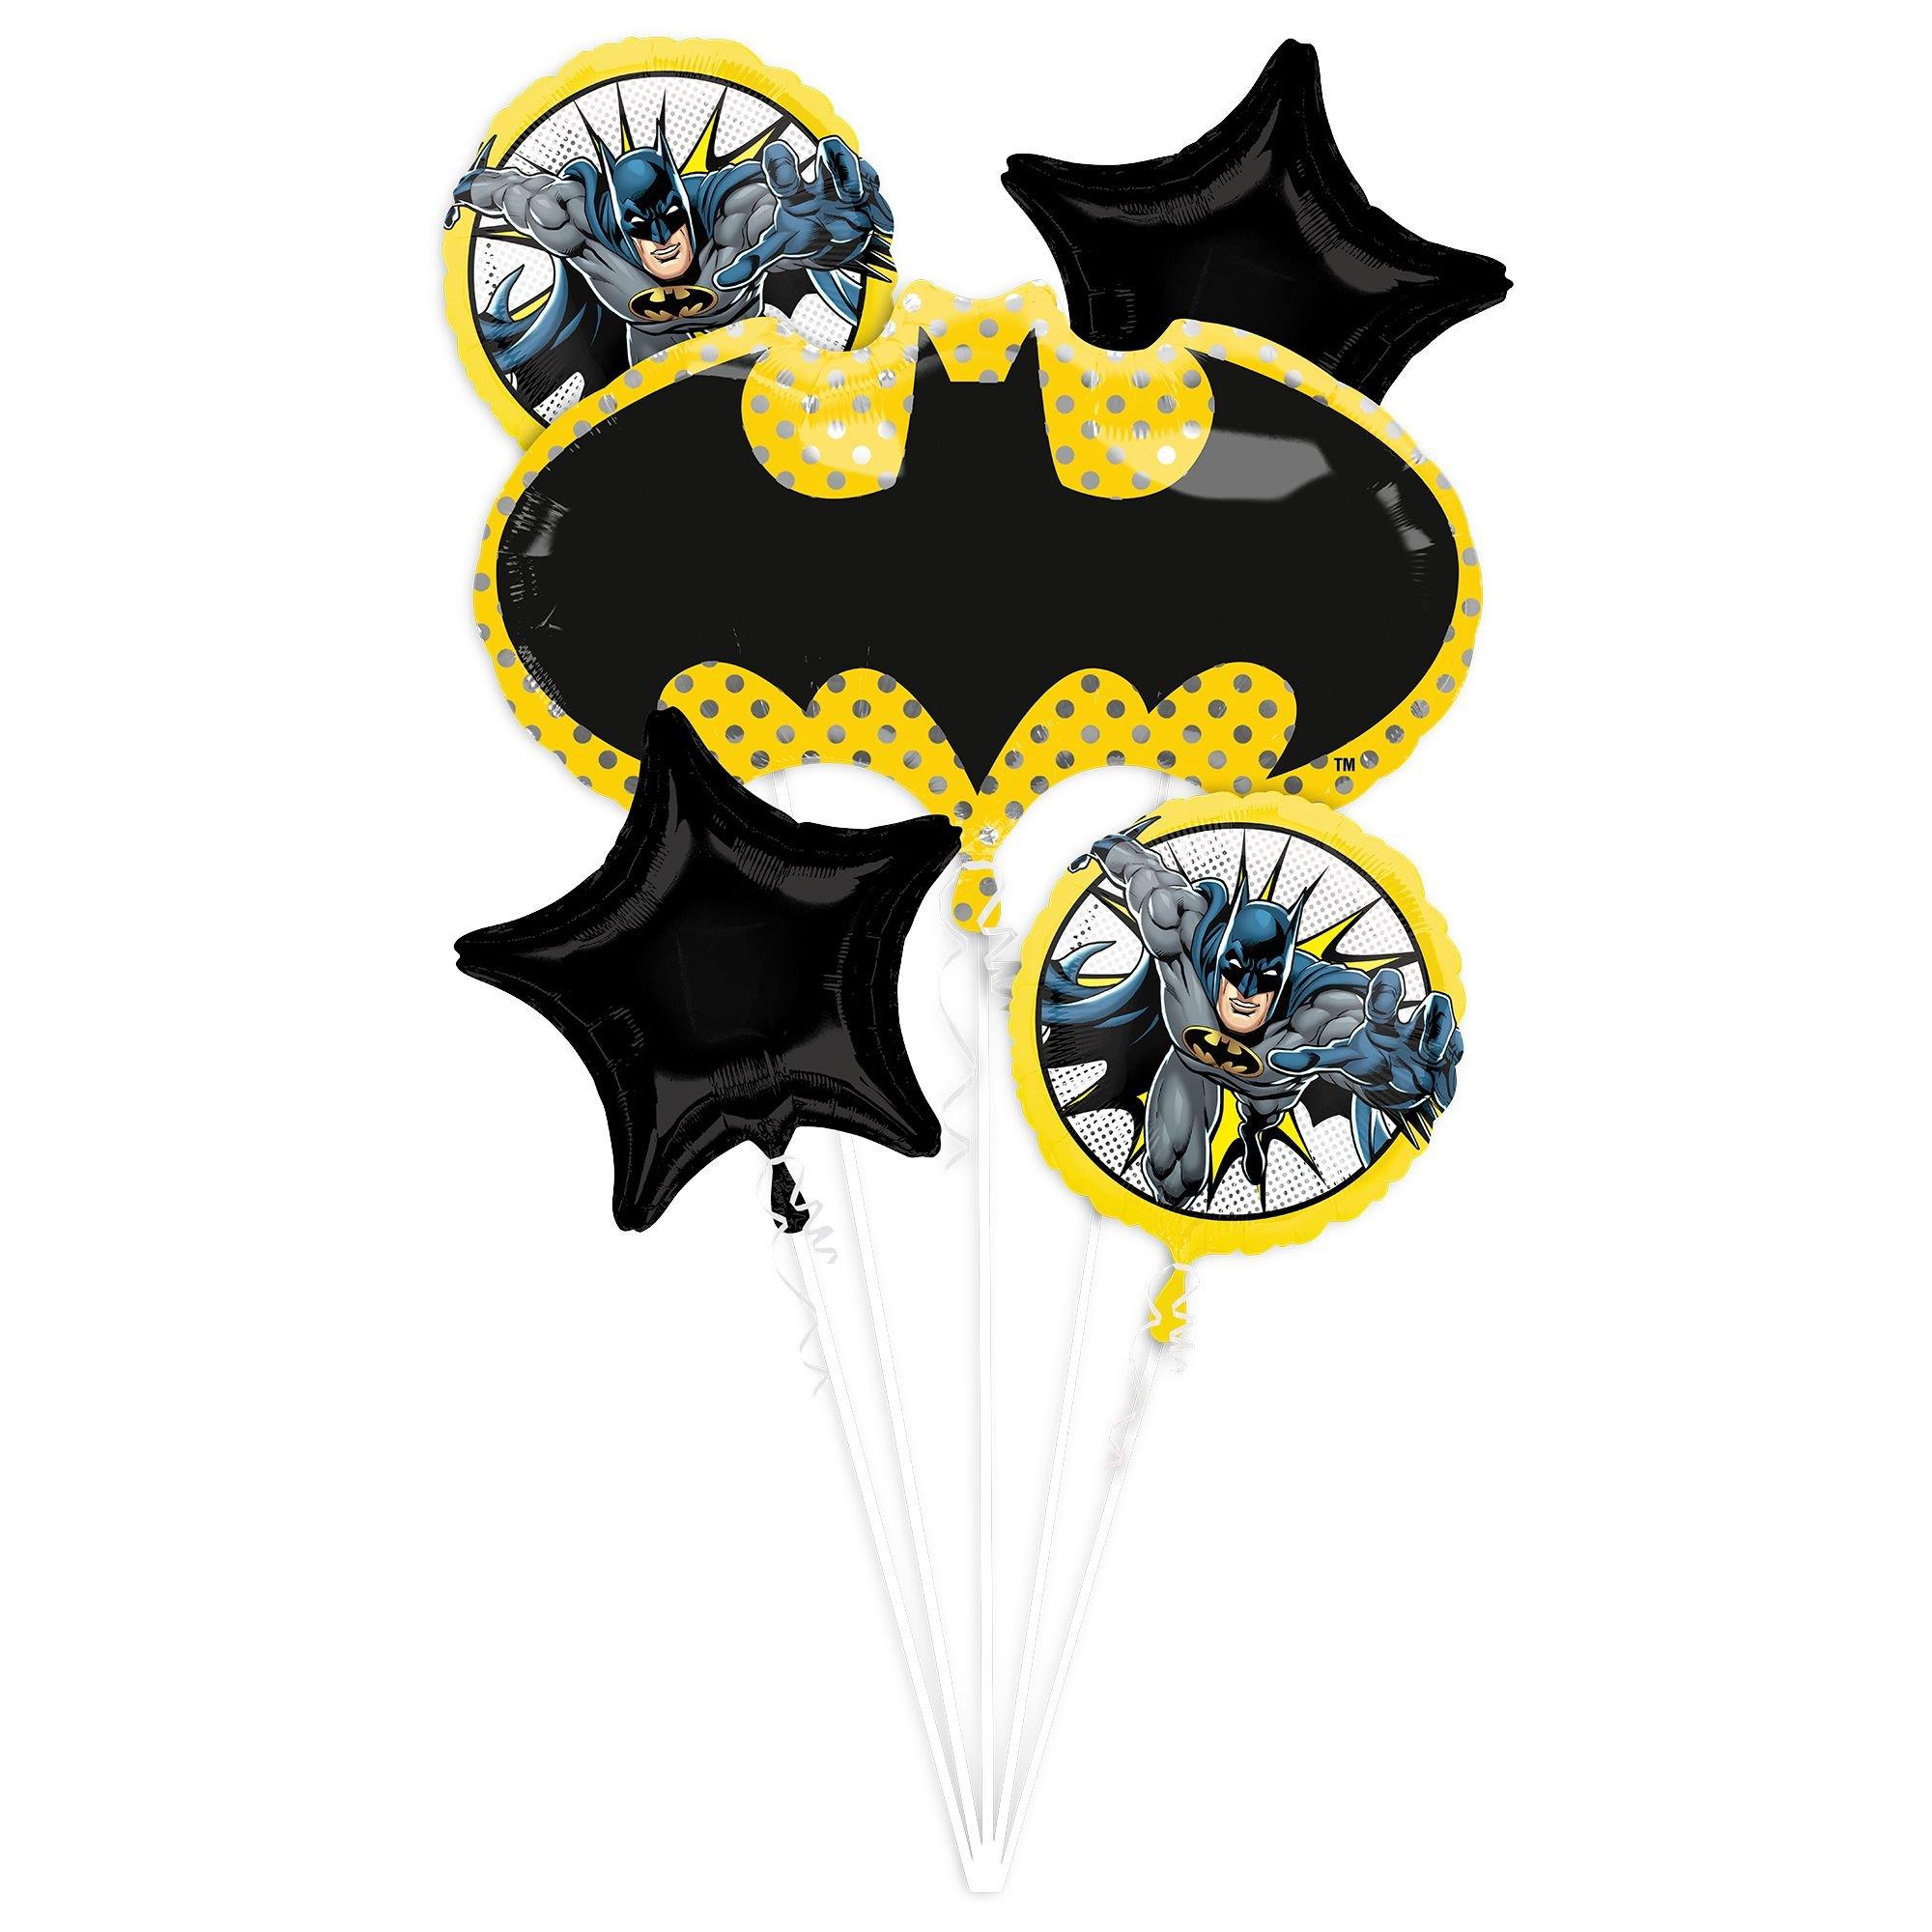 Batman Foil Balloon Bouquet, 5pc - DC Comics